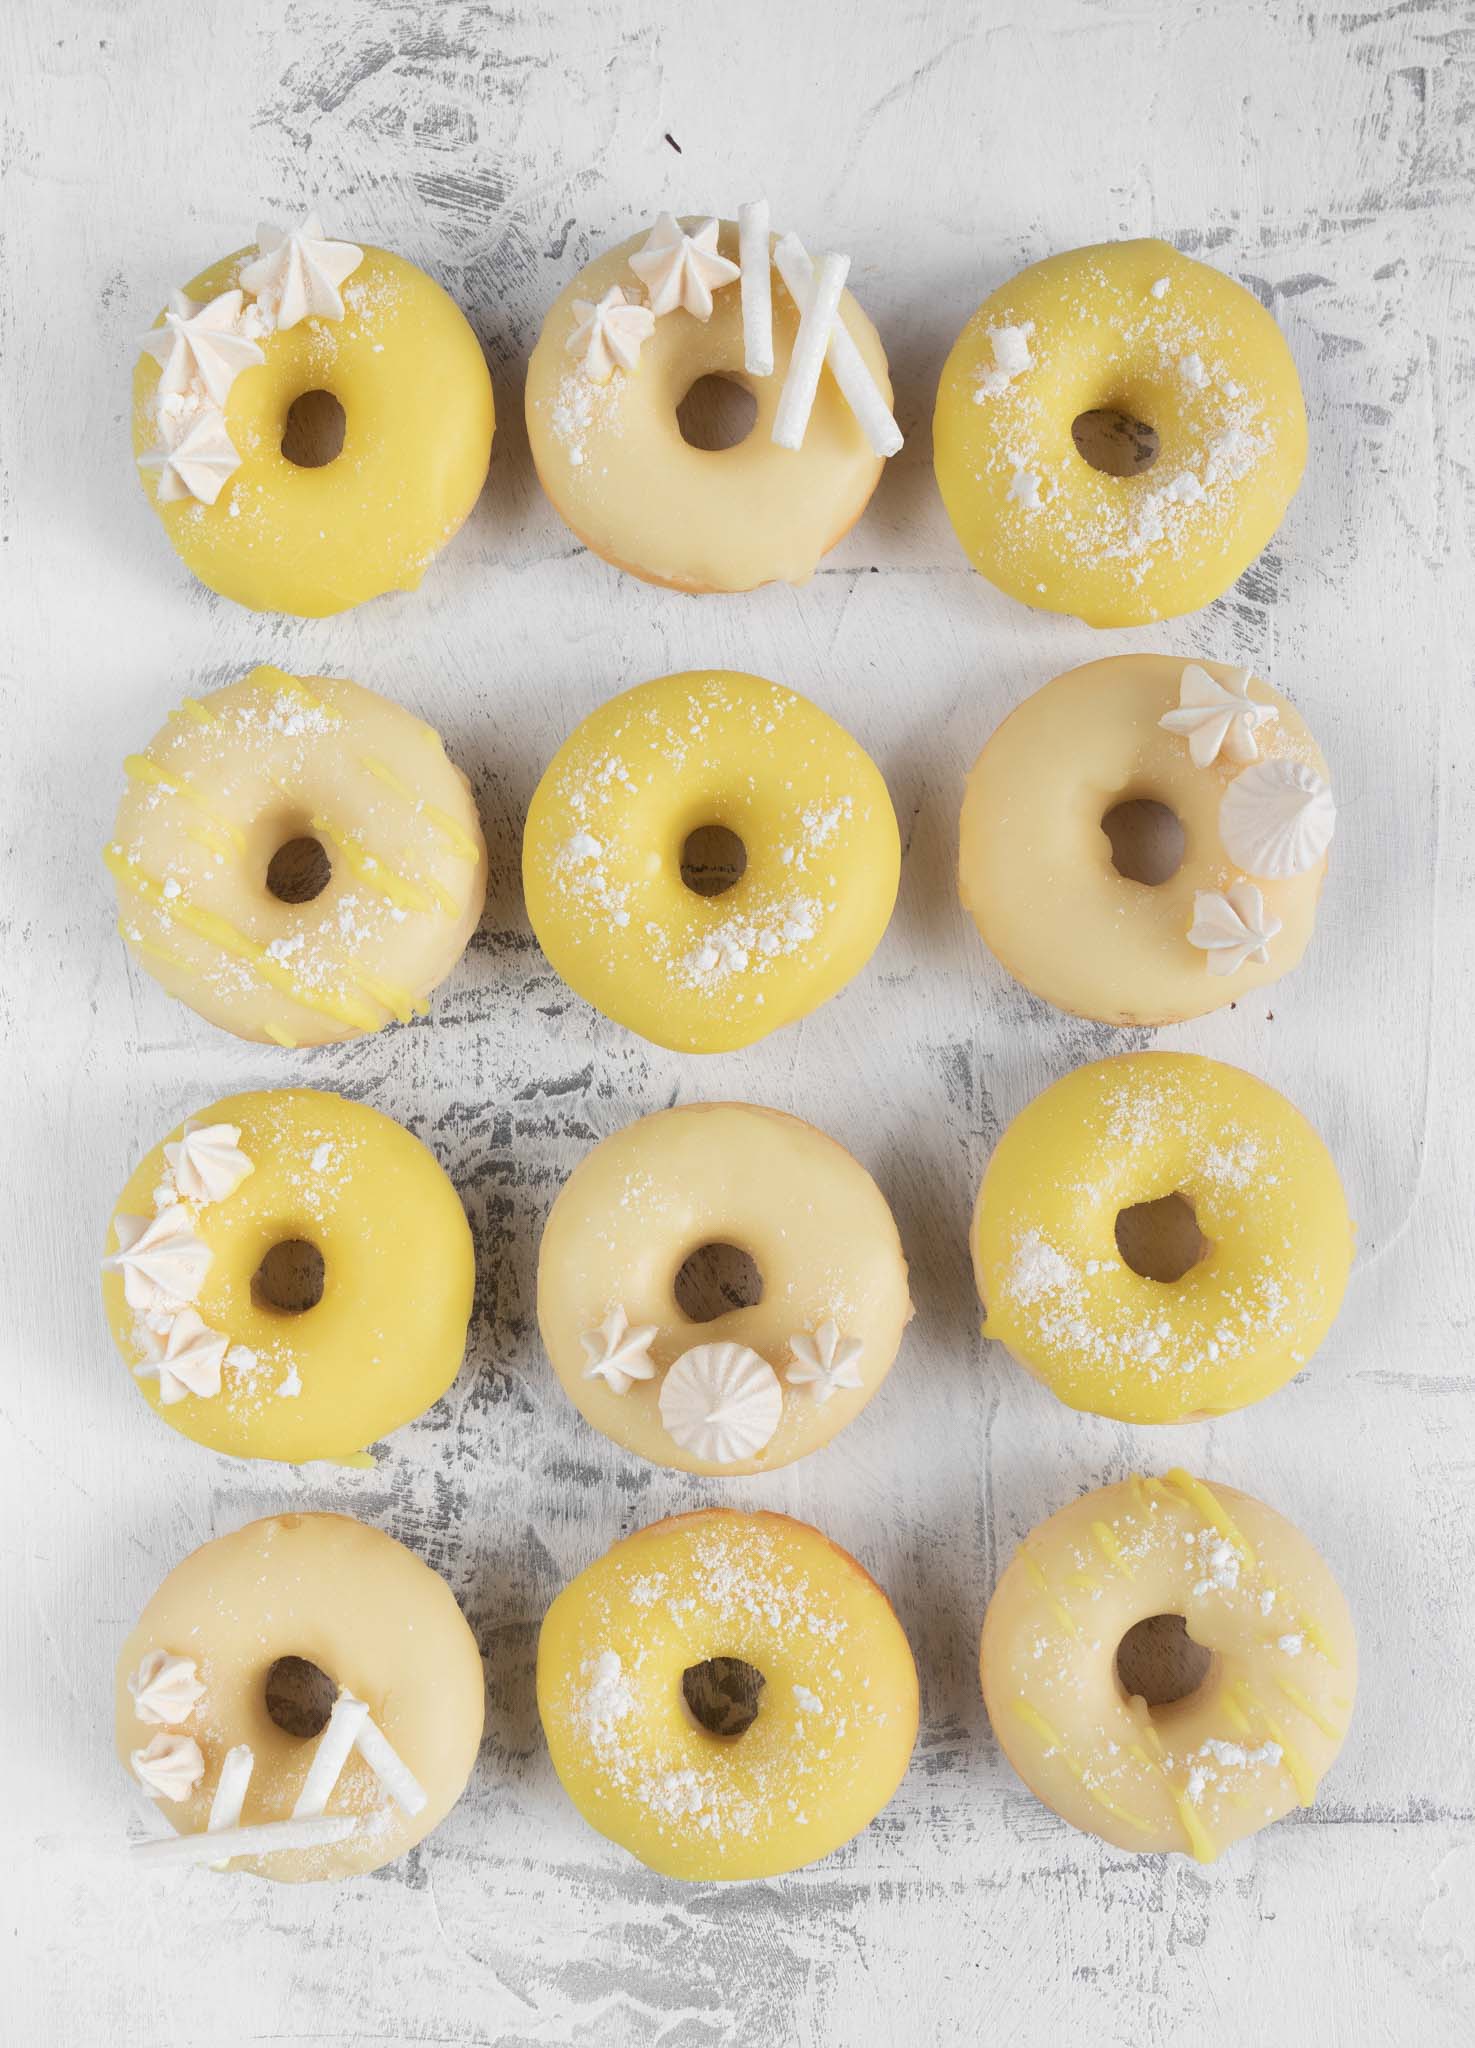 12 lemon meringue baked glazed donuts